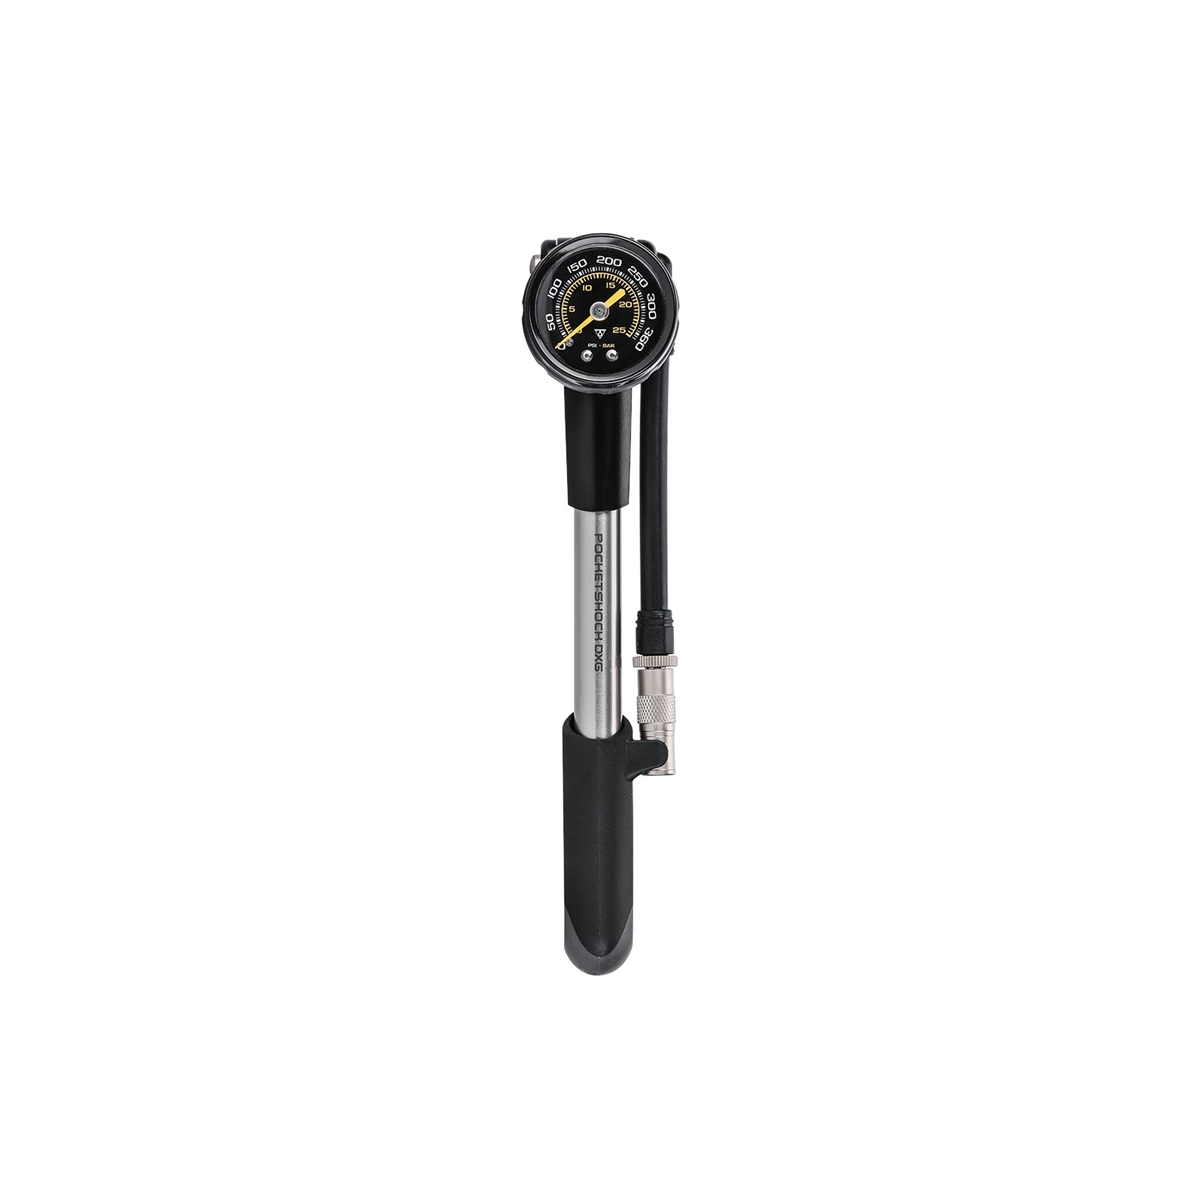 Pompa per Ammortizzatori PocketShock DXG Valvola Pressure-Rite 25bar / 360psi